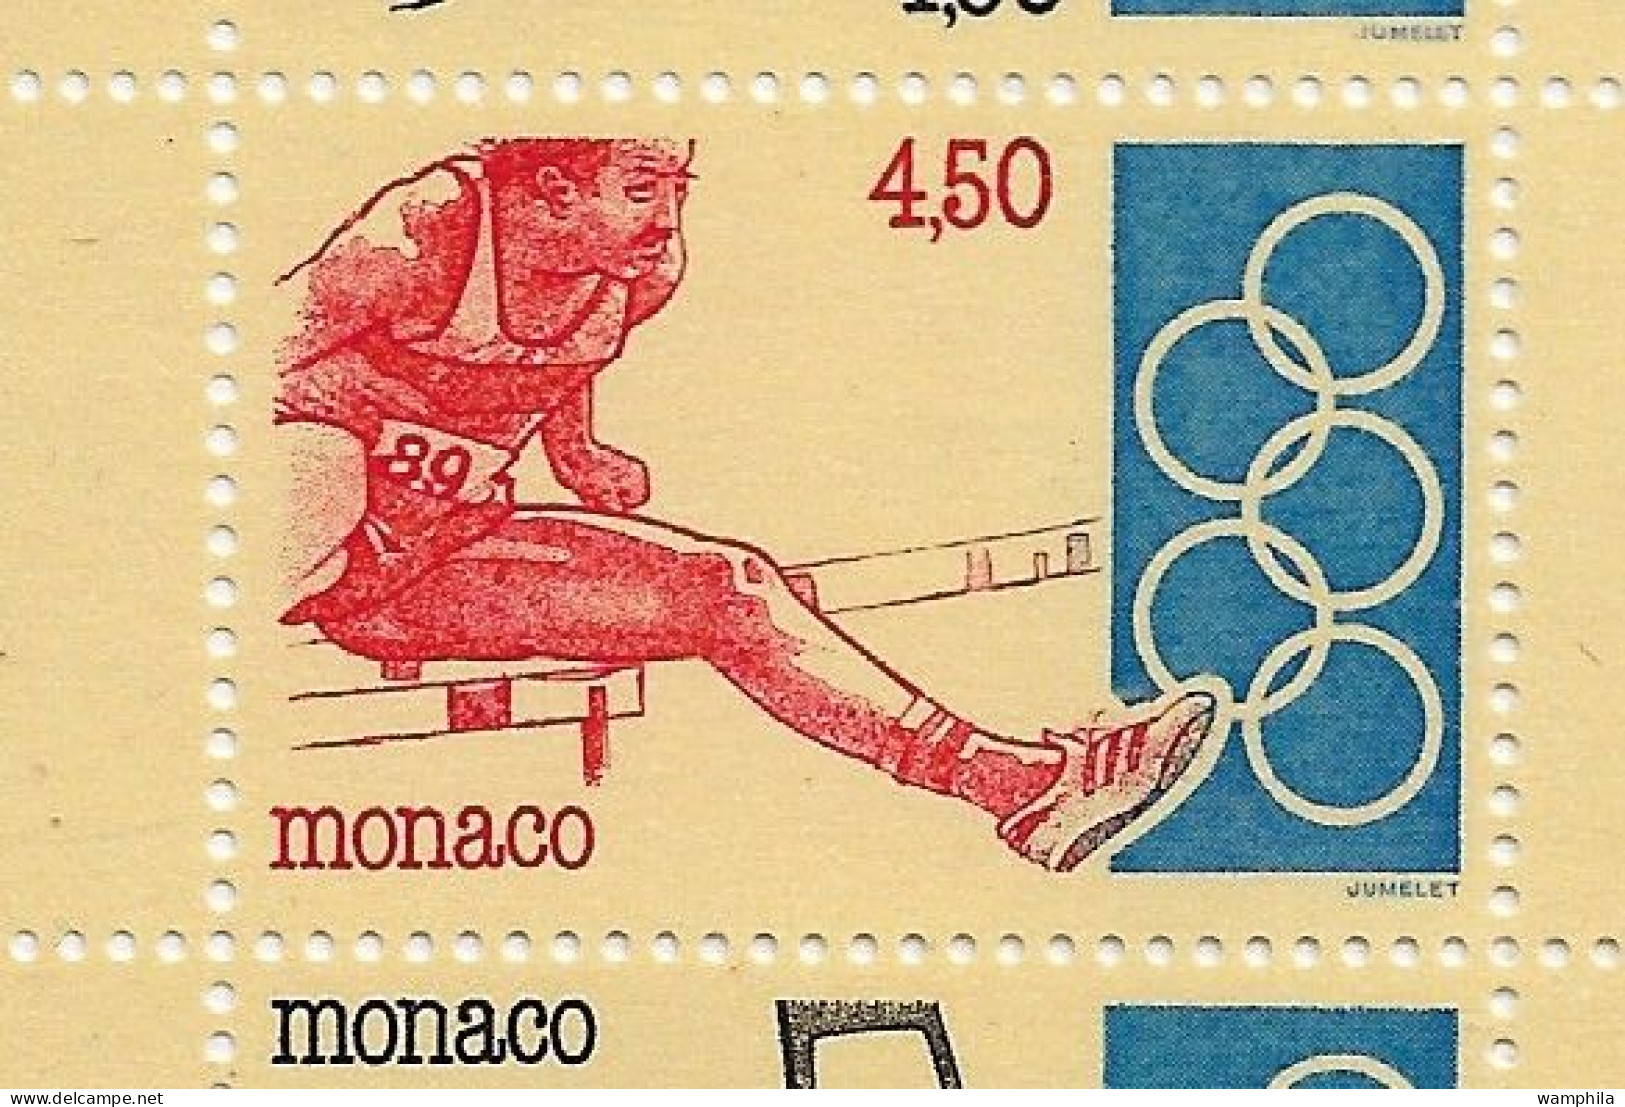 Monaco 1993. Carnet N°11, J.O .Anneaux, Judo, Escrime, Haies, Tir à L'arc, Haltérophilie. - Escrime